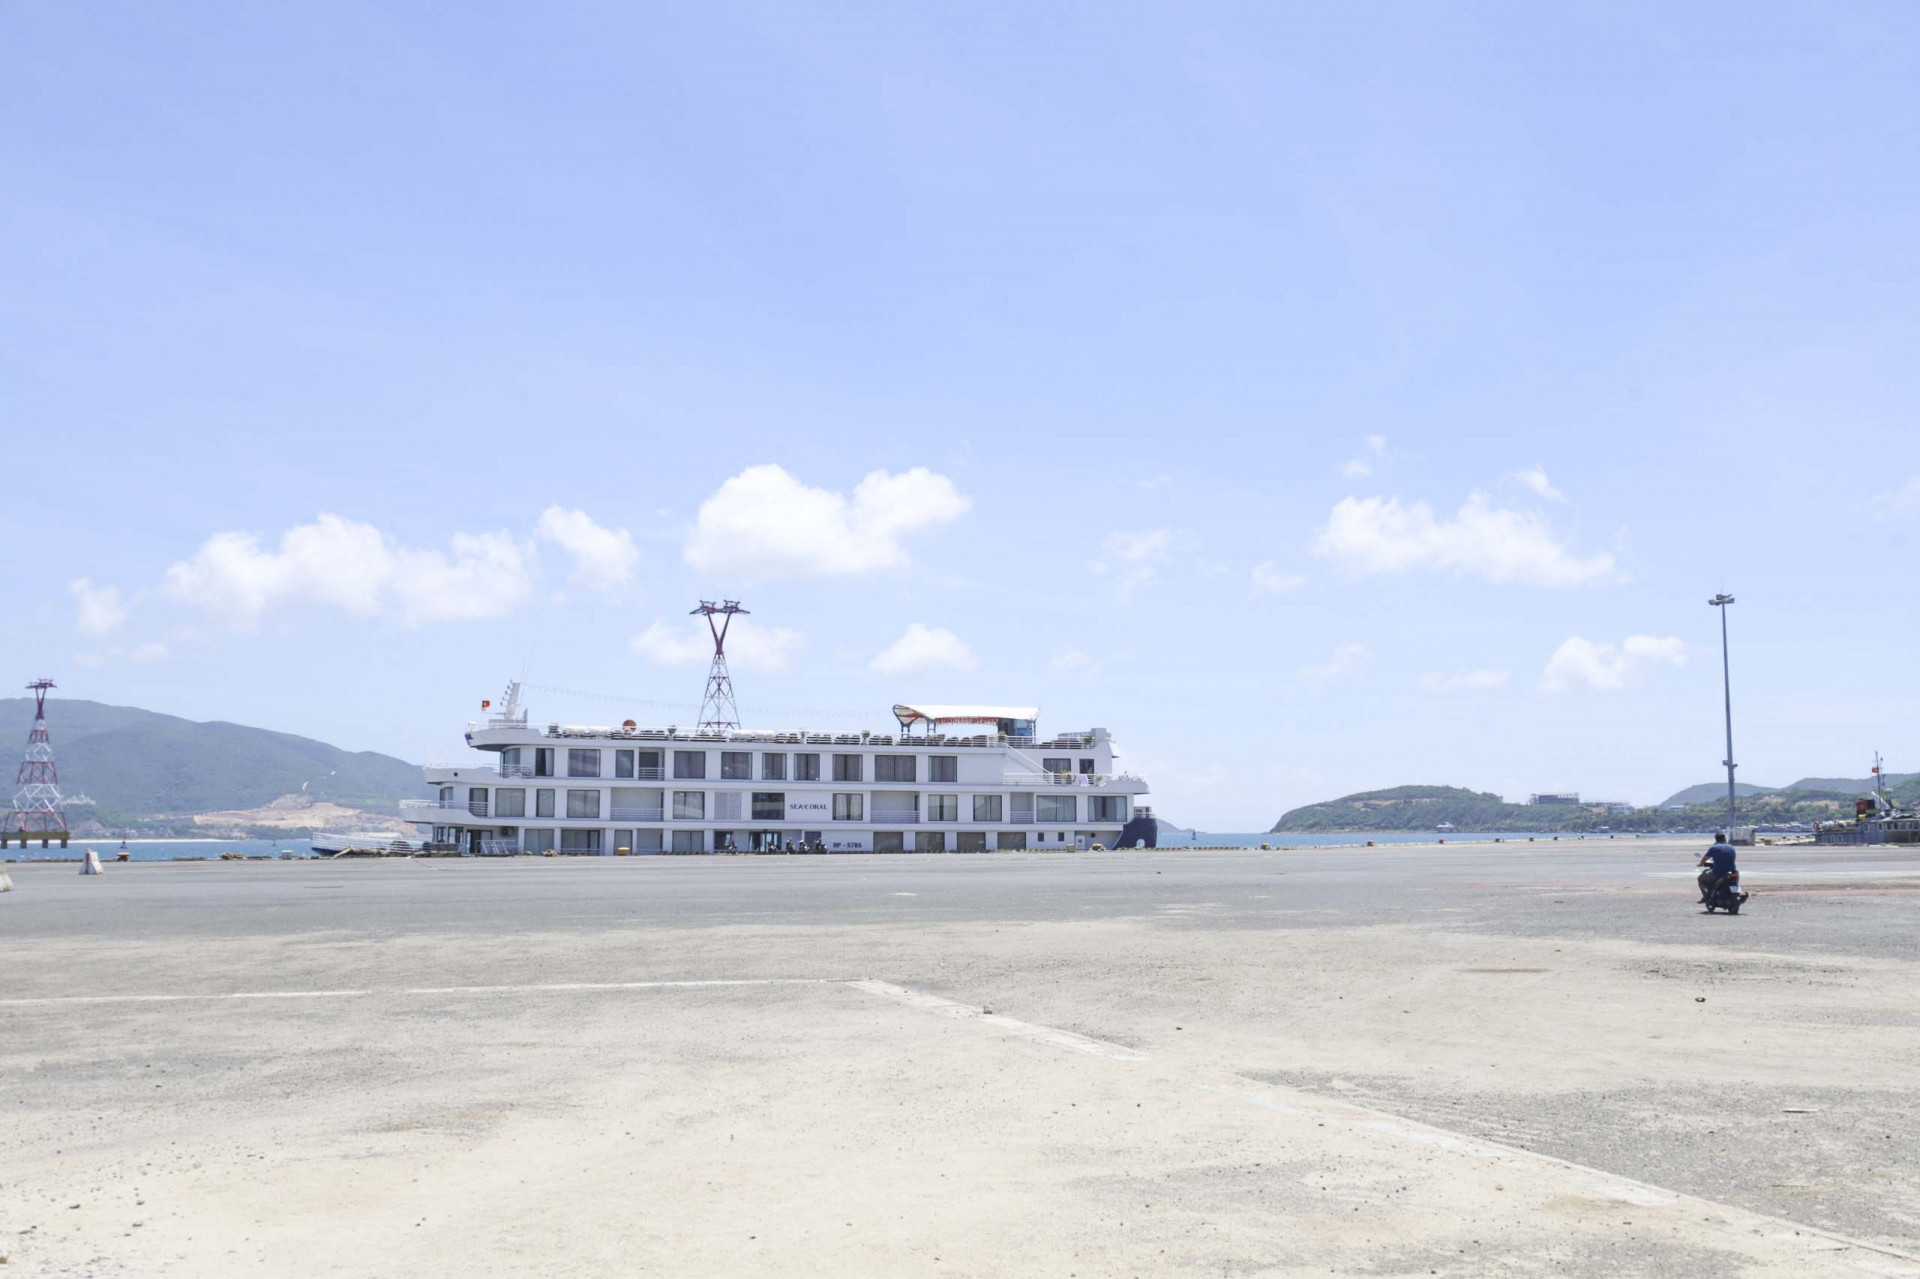 Khu vực đón khách tại cảng cũng được dọn vệ sinh môi trường.